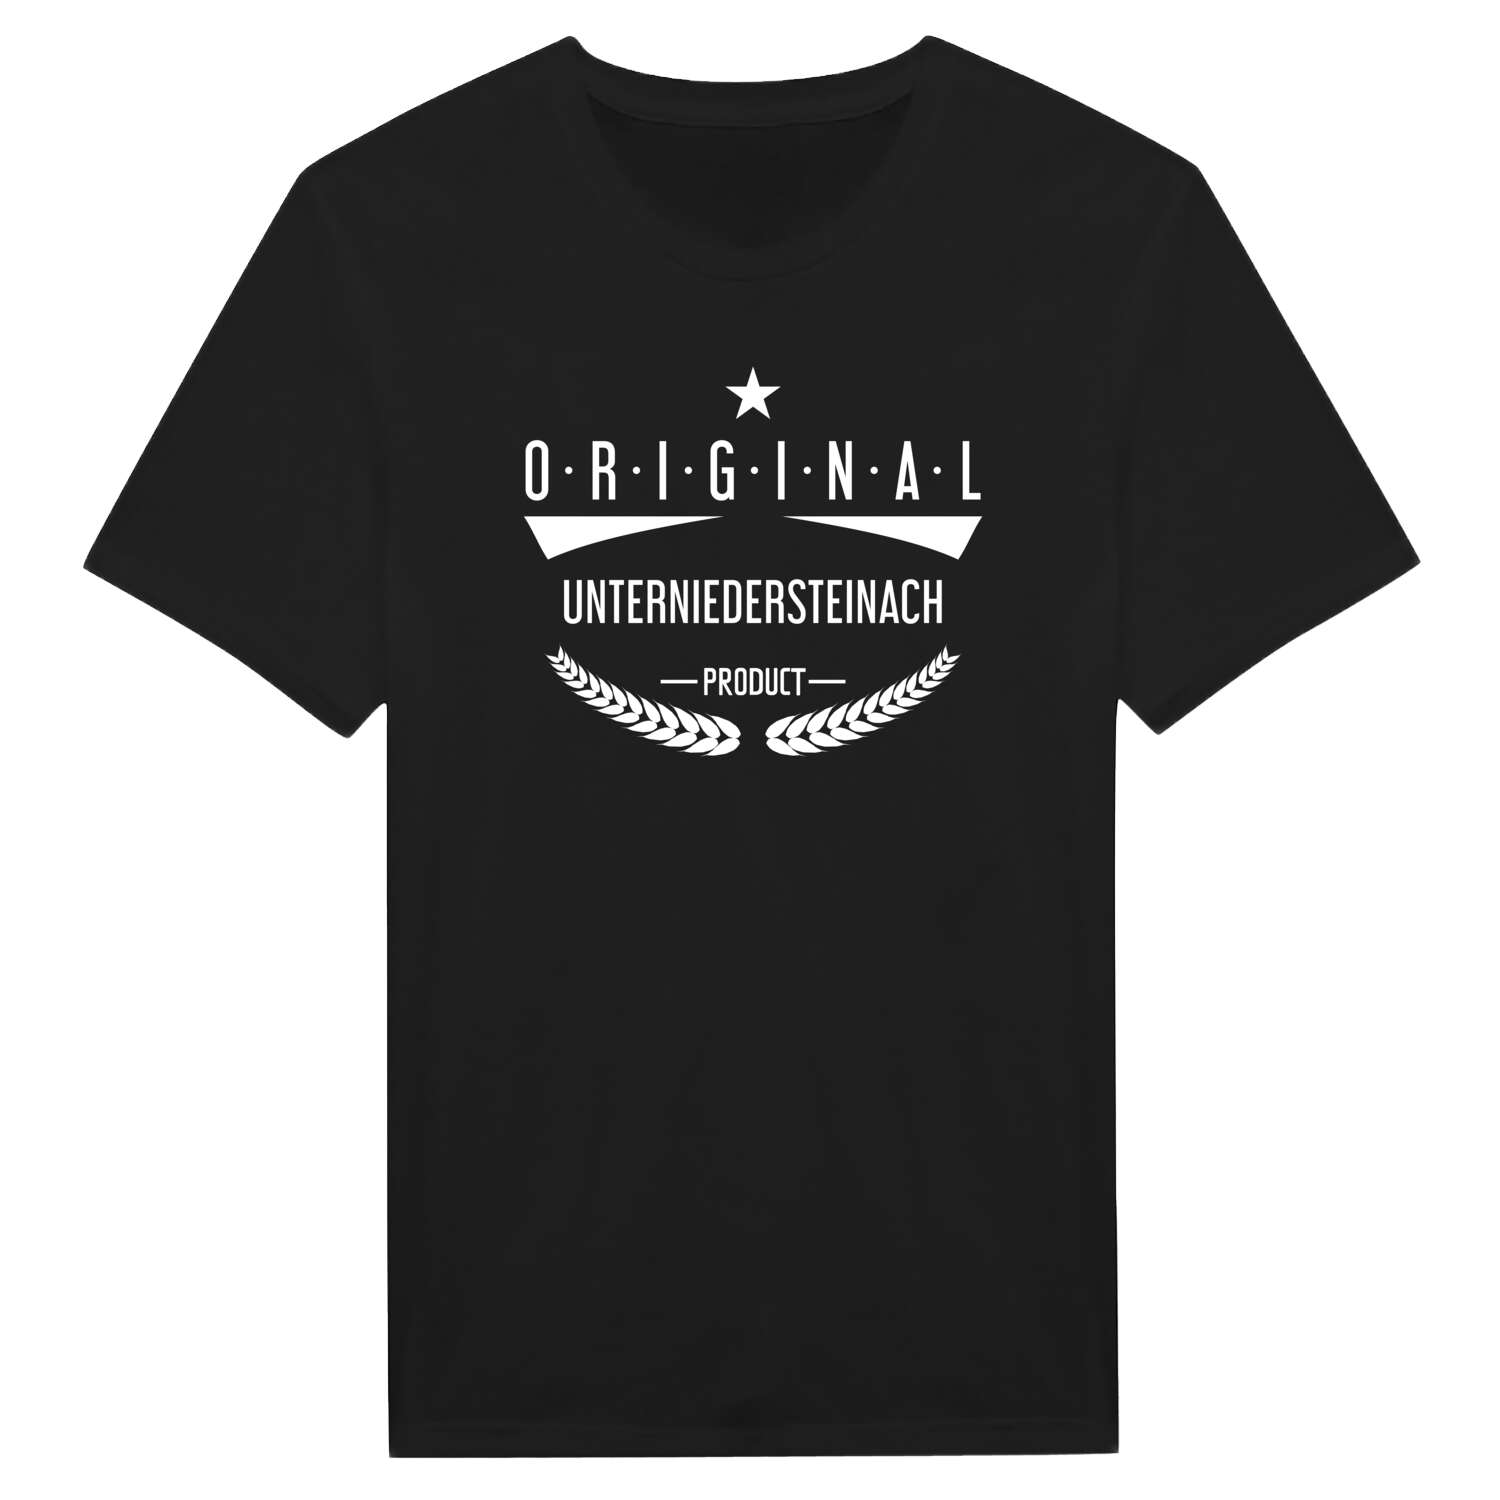 Unterniedersteinach T-Shirt »Original Product«